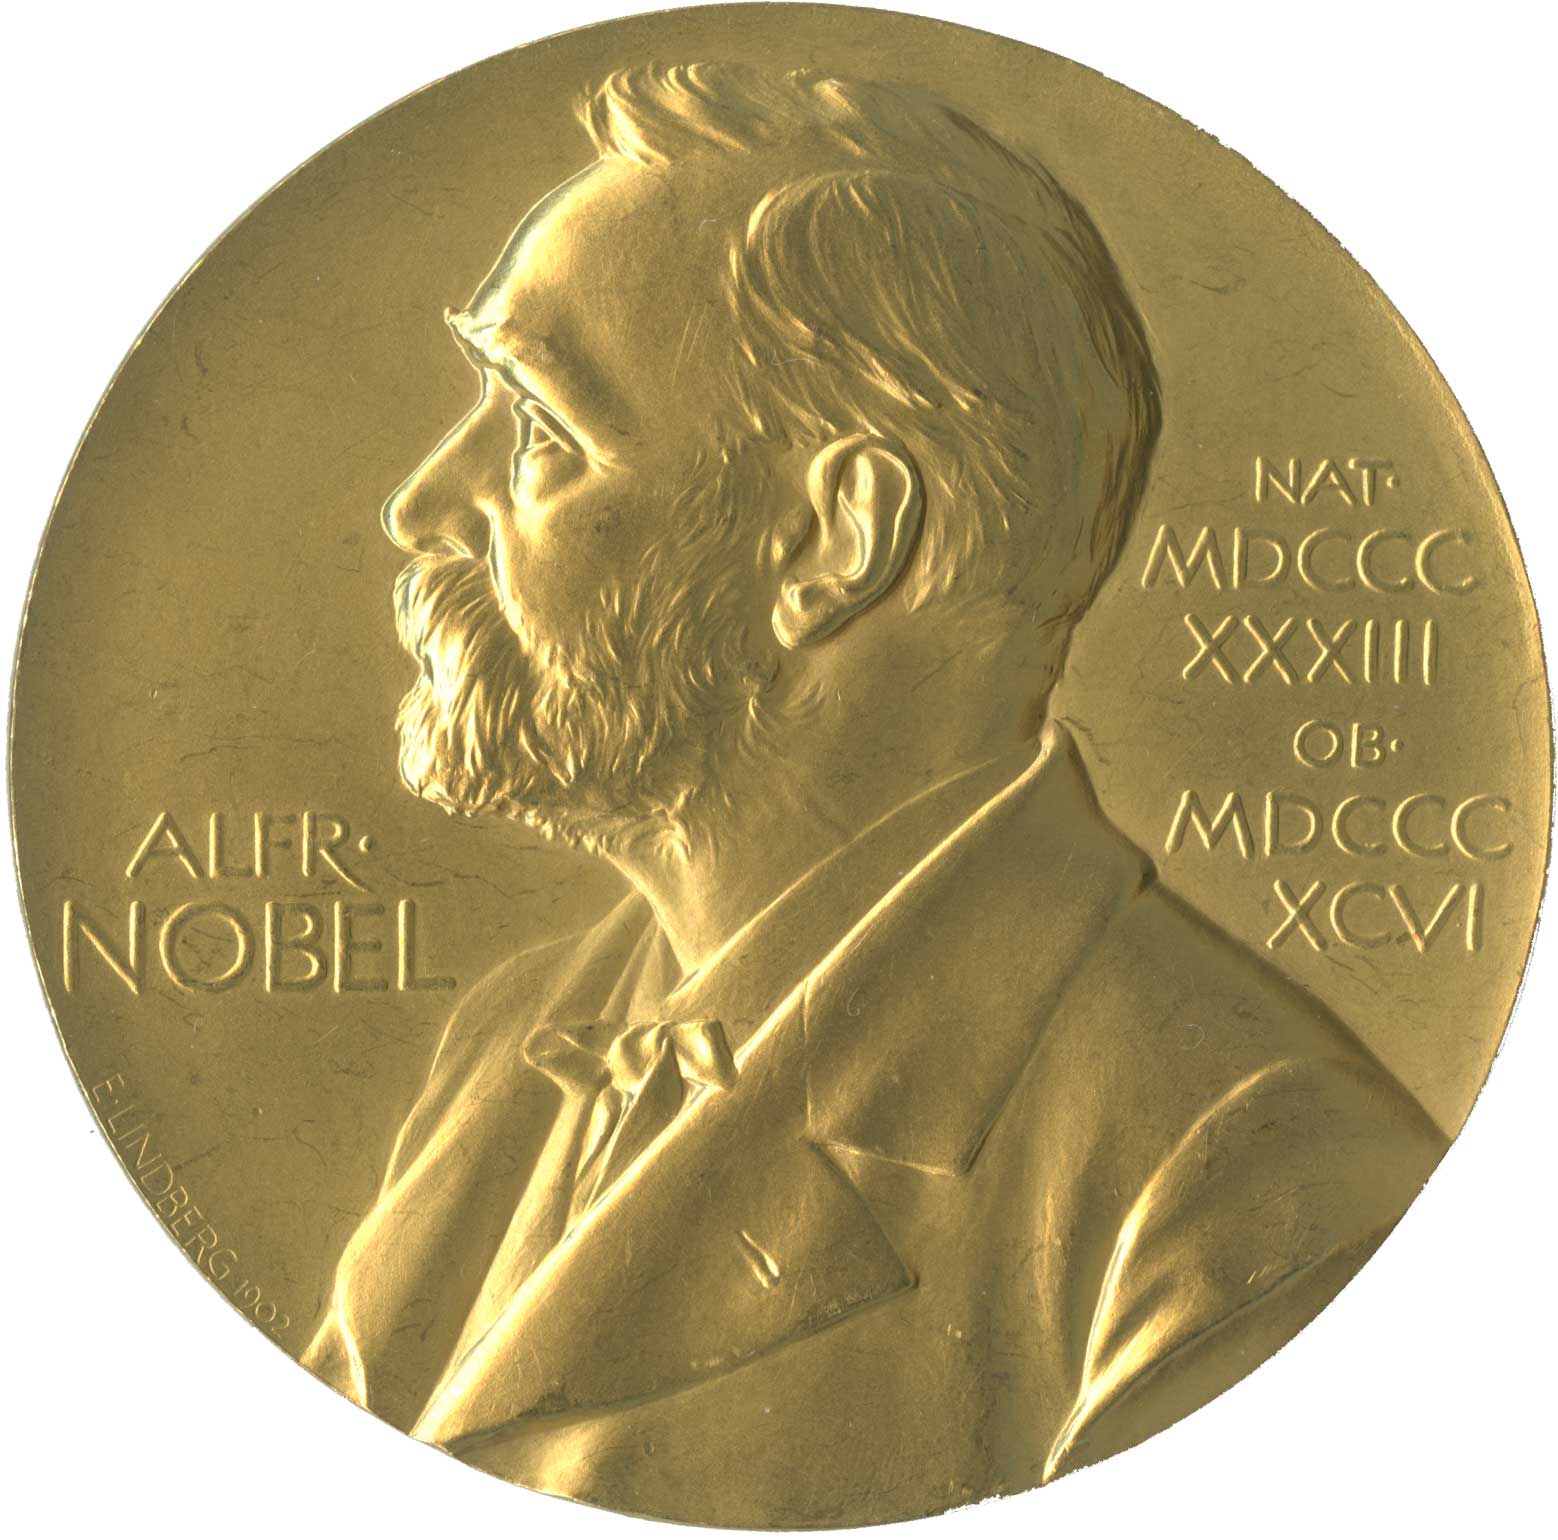 Ernst Chain's Nobel Prize medallion, obverse